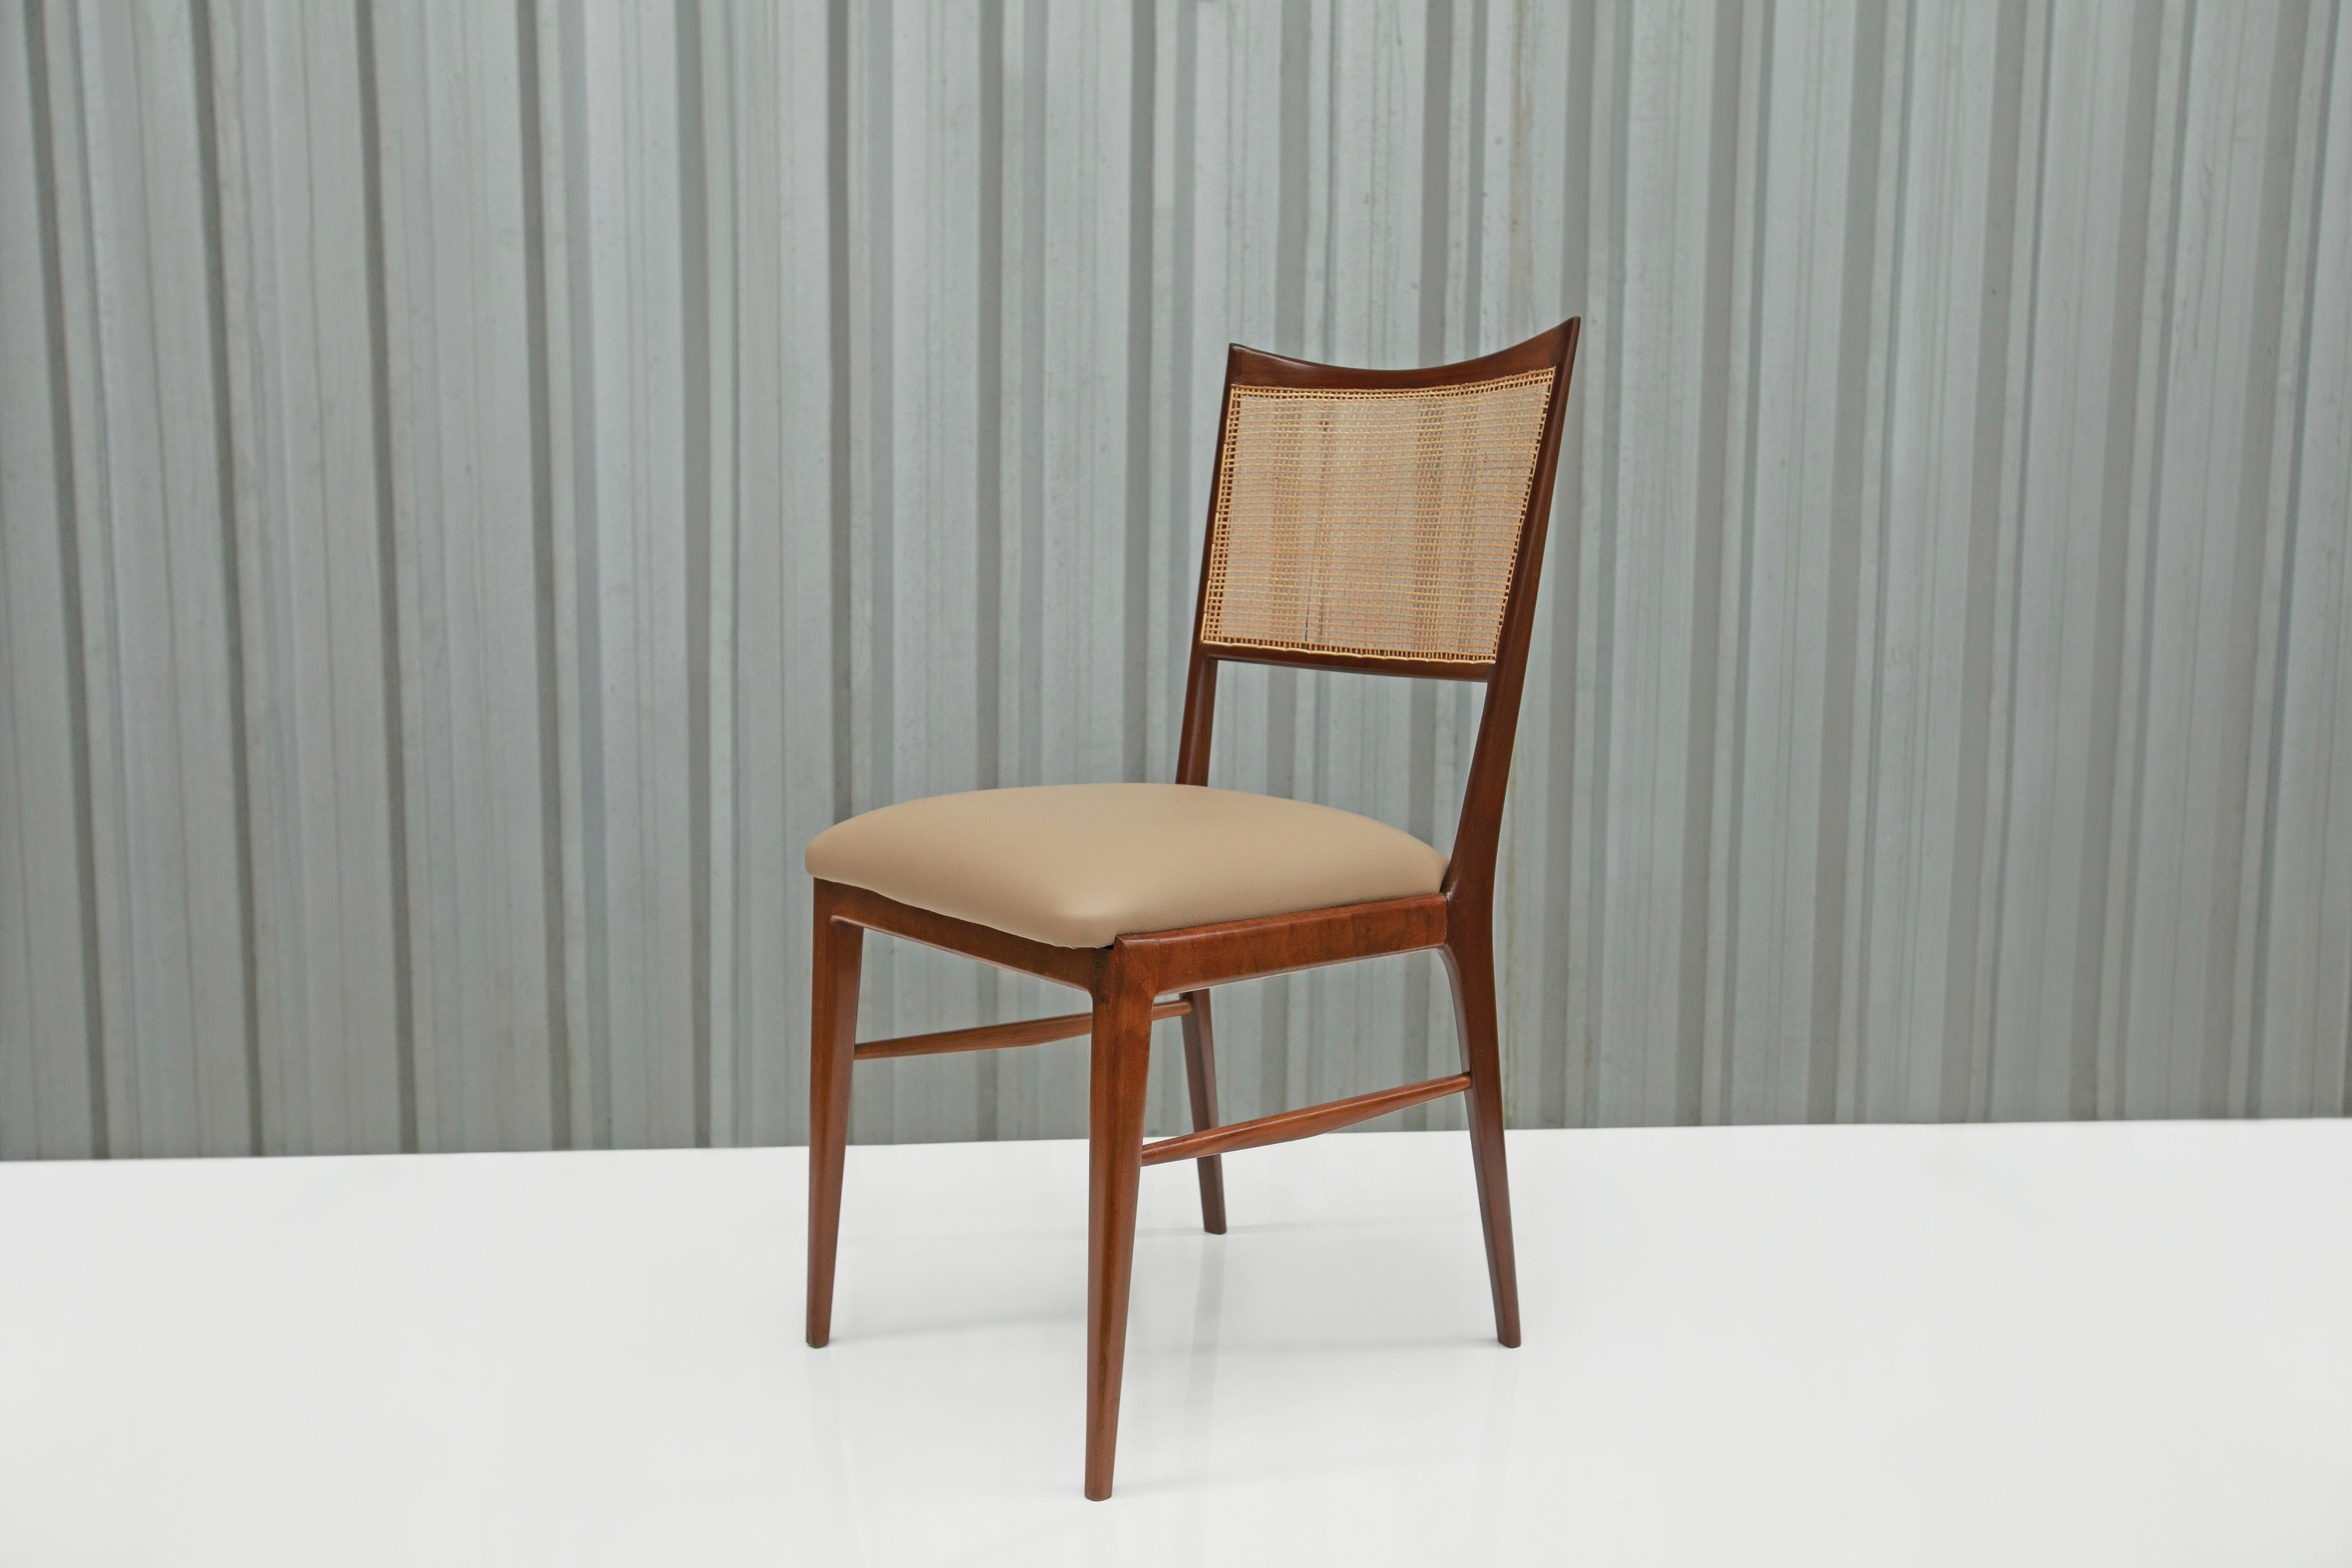 Disponibles dès aujourd'hui à New York, avec livraison nationale gratuite, ces quatre chaises modernes brésiliennes en bois dur et cuir beige fabriquées dans les années 60 ne sont rien de moins que spectaculaires !

Cet ensemble comprend quatre